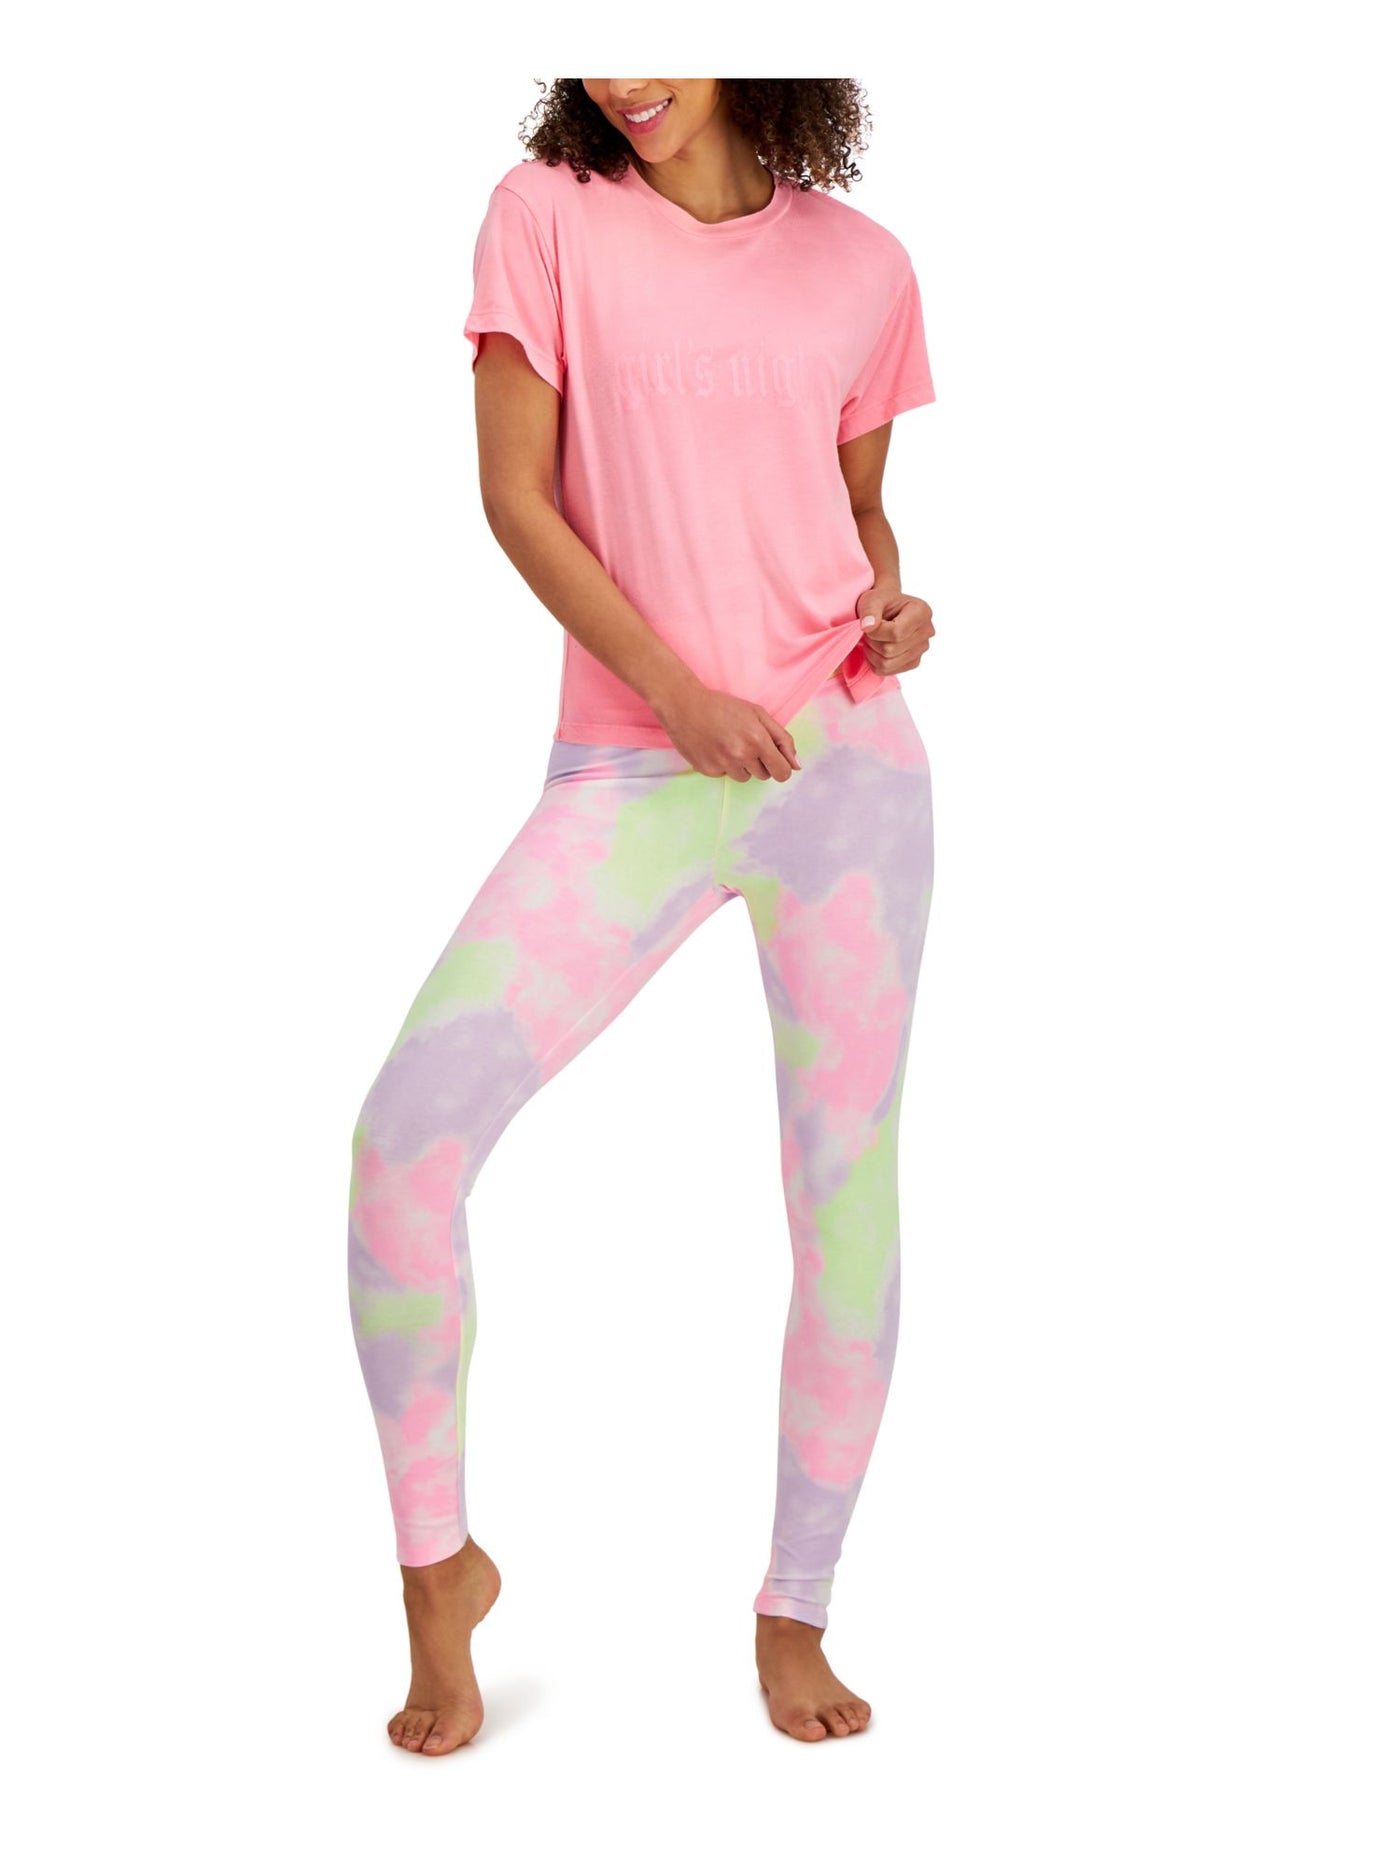 JENNI Intimates Pink Sleep Shirt Pajama Top XS